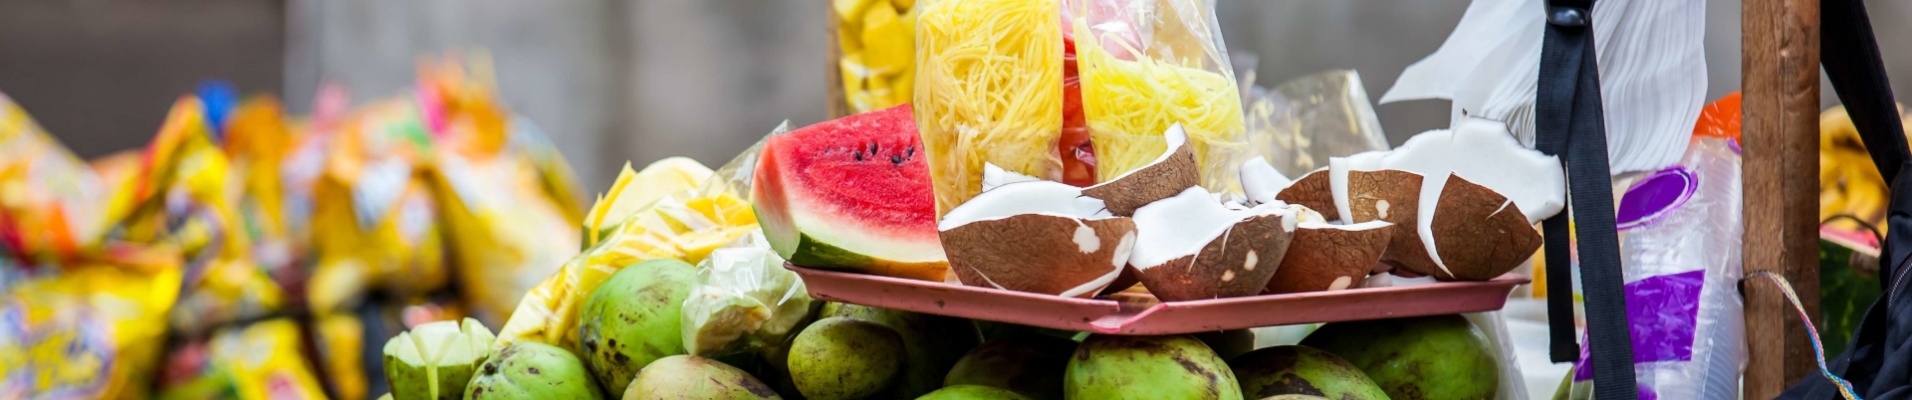 vendeur-rue-fruits-culture-colombie